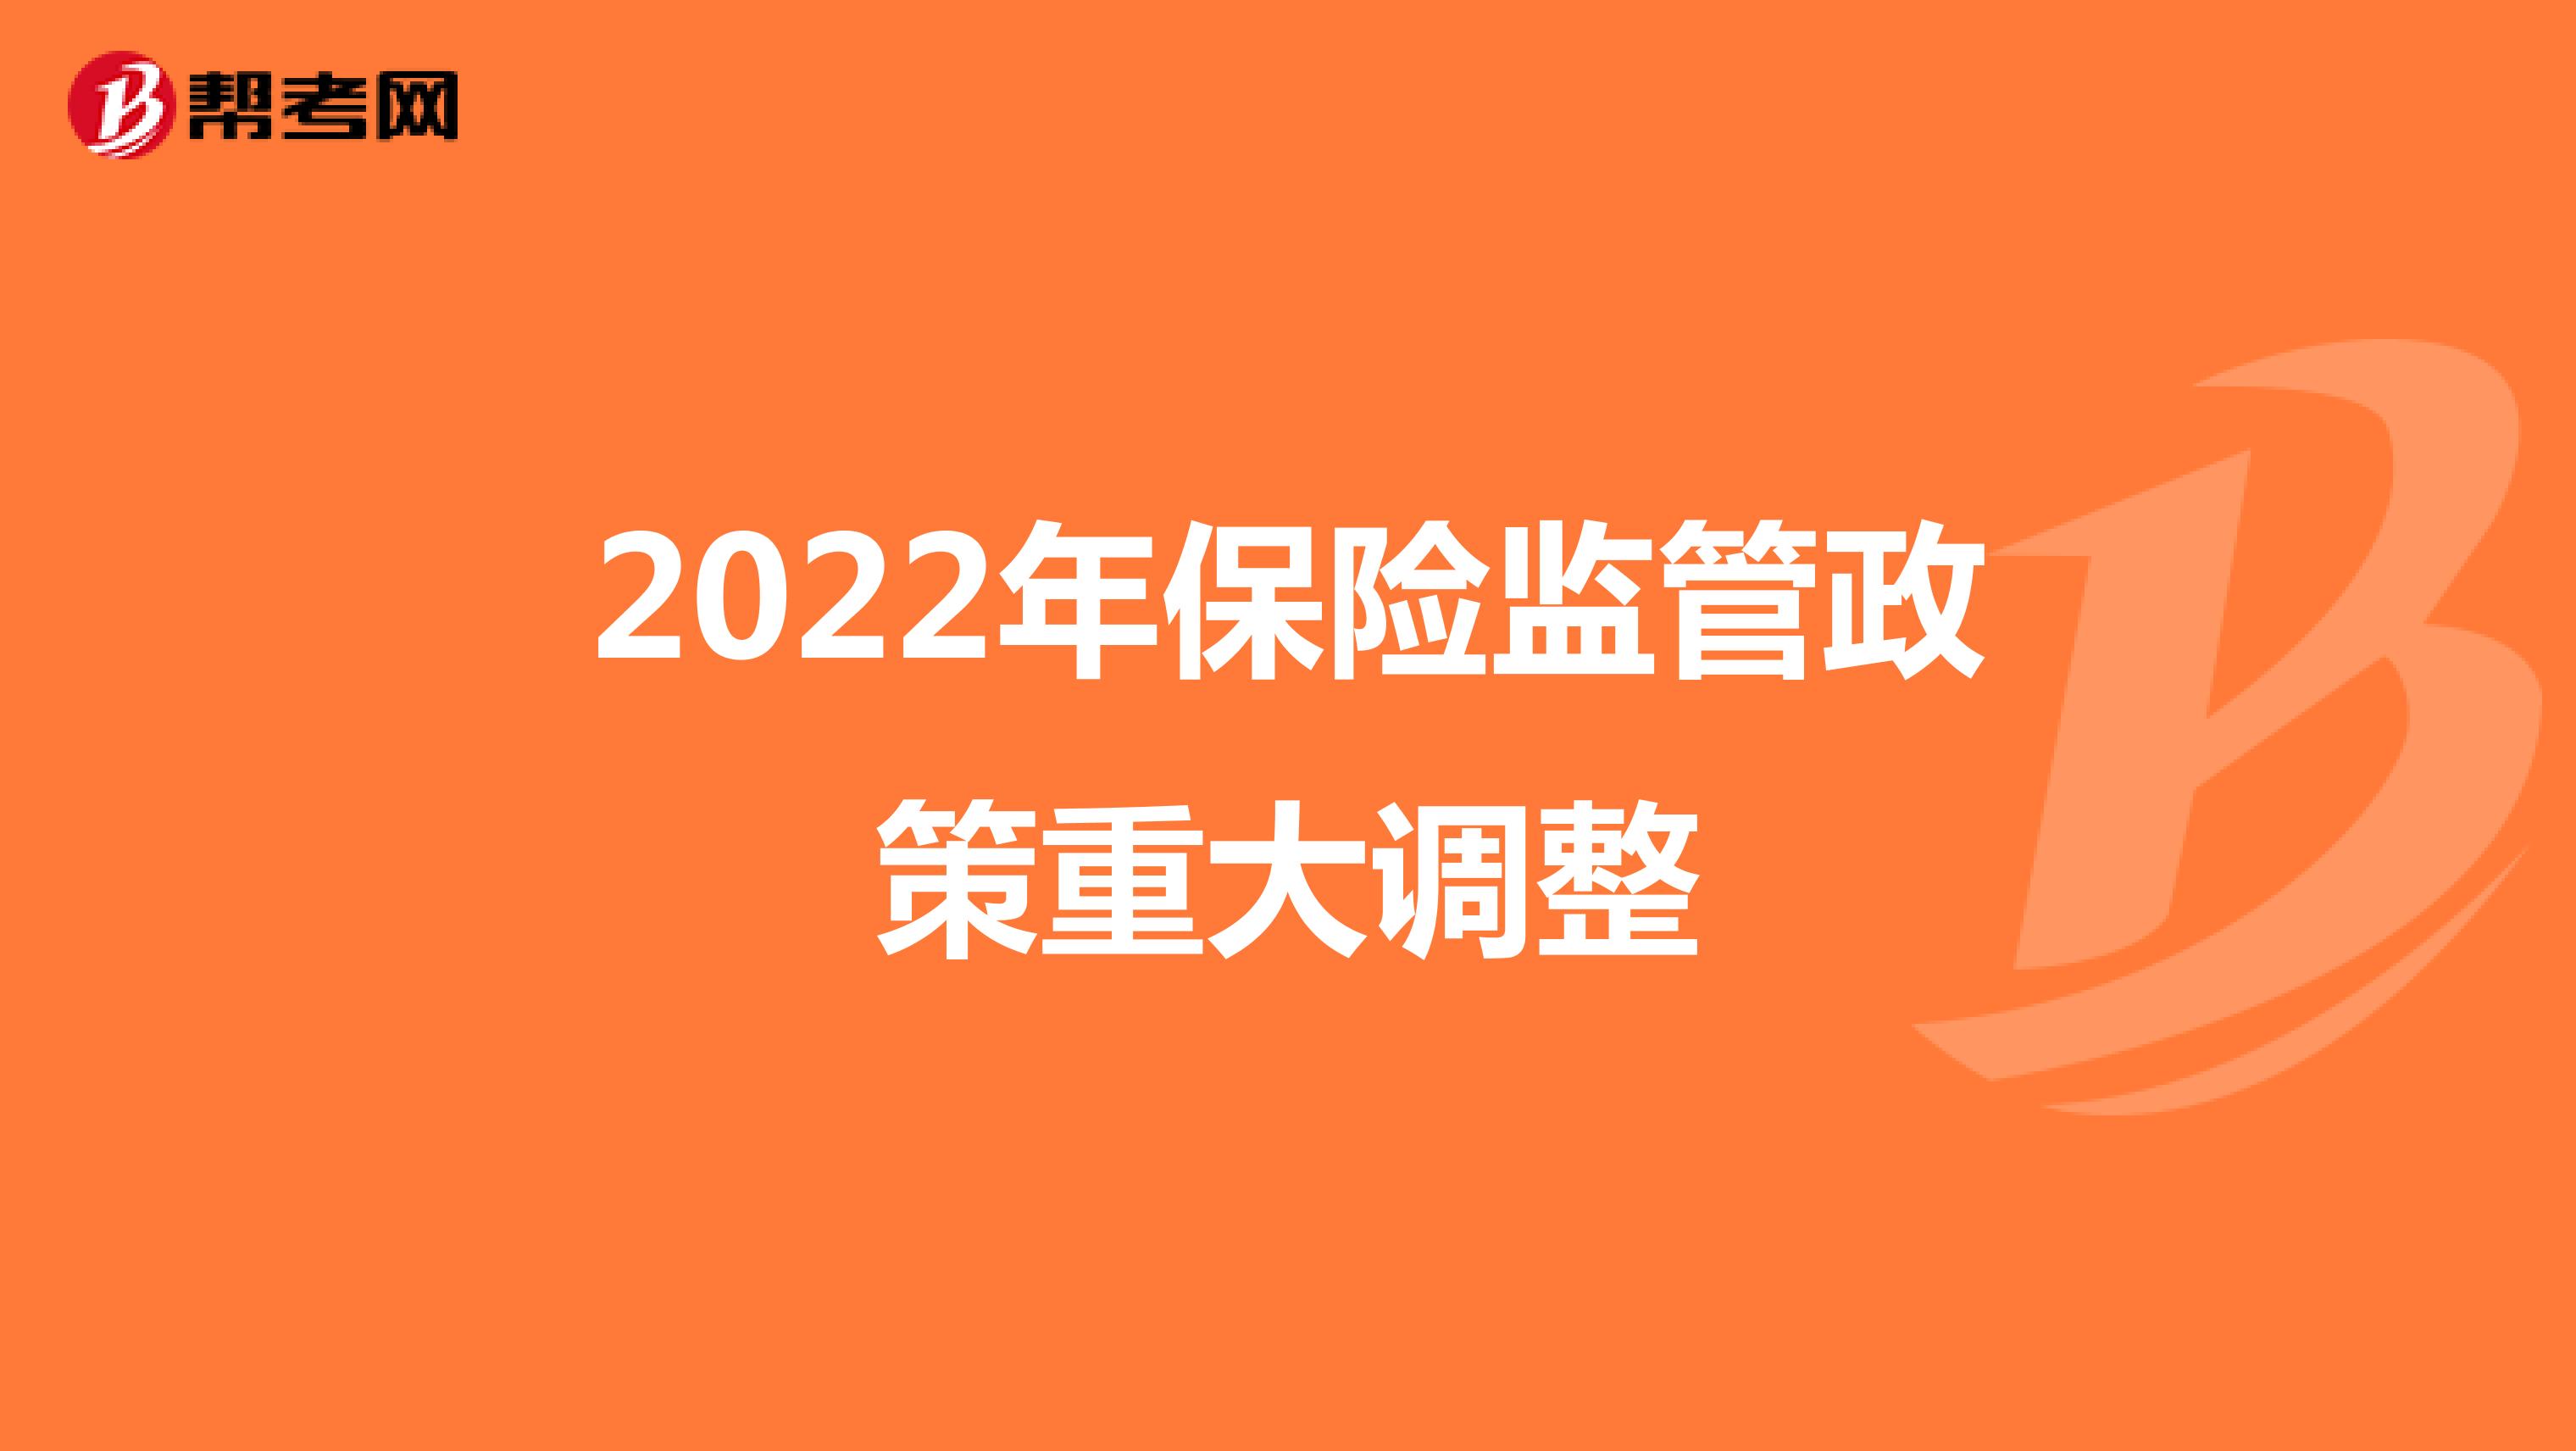 2022年保险监管政策重大调整